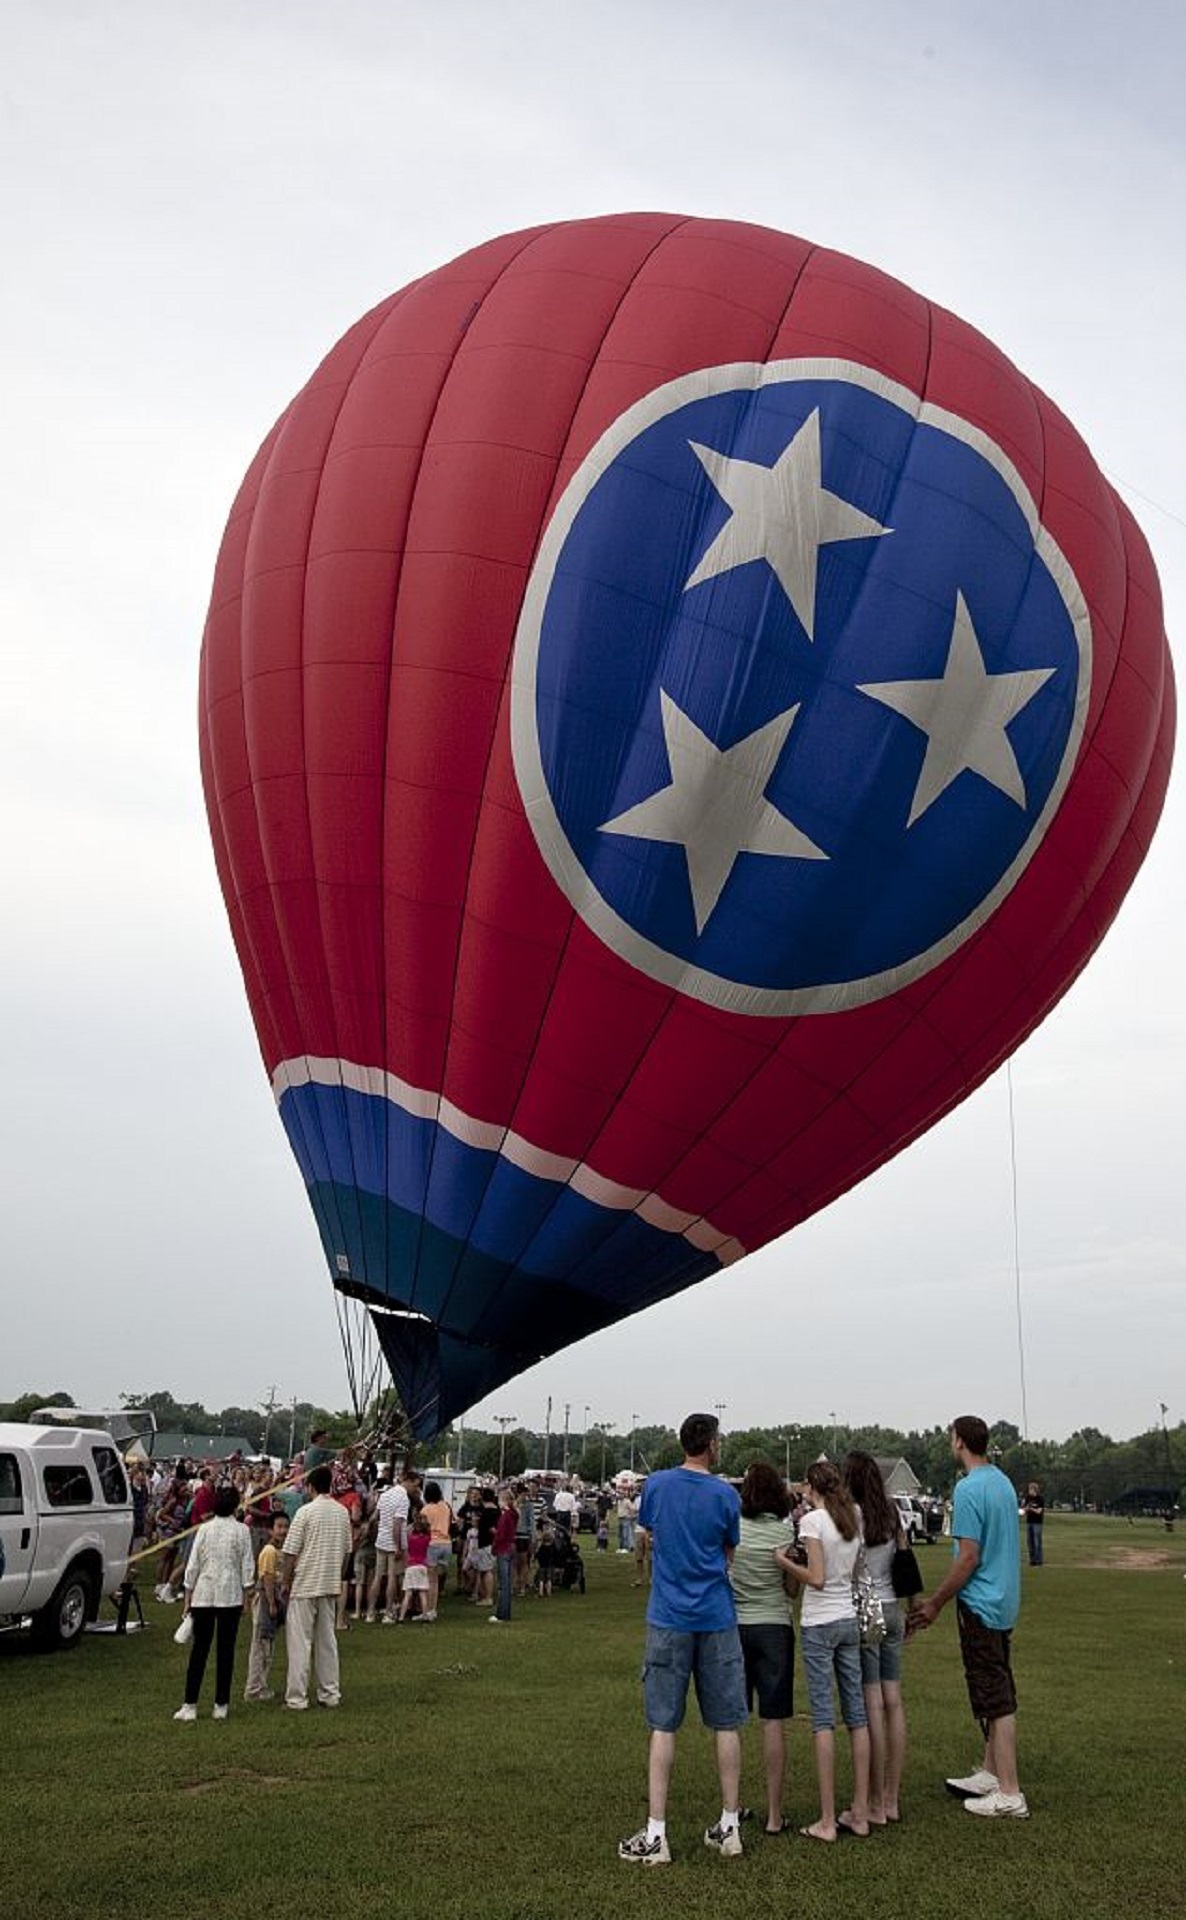 Hot air balloon ride photo